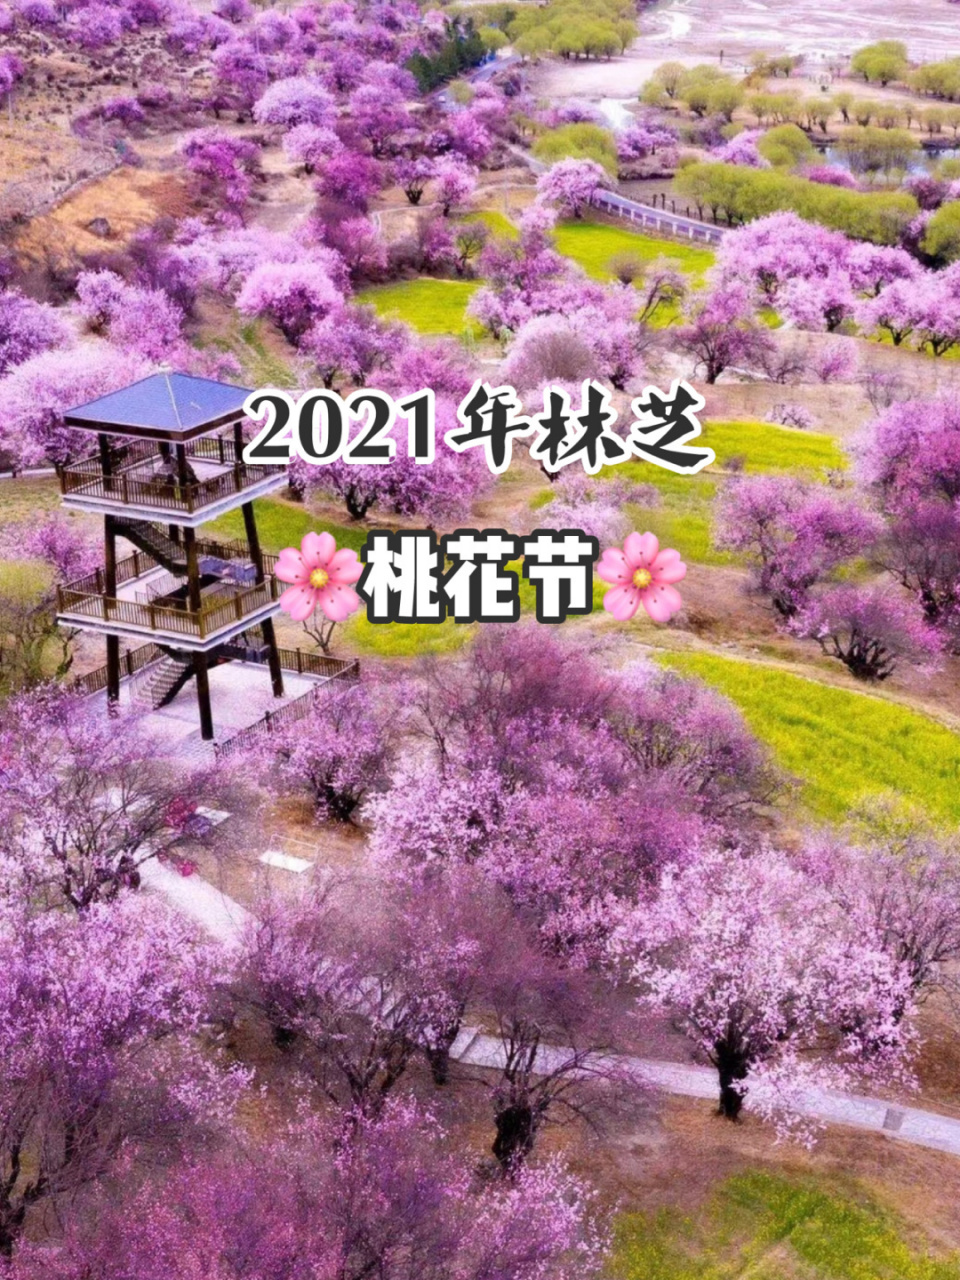 三十岗桃花节2021图片